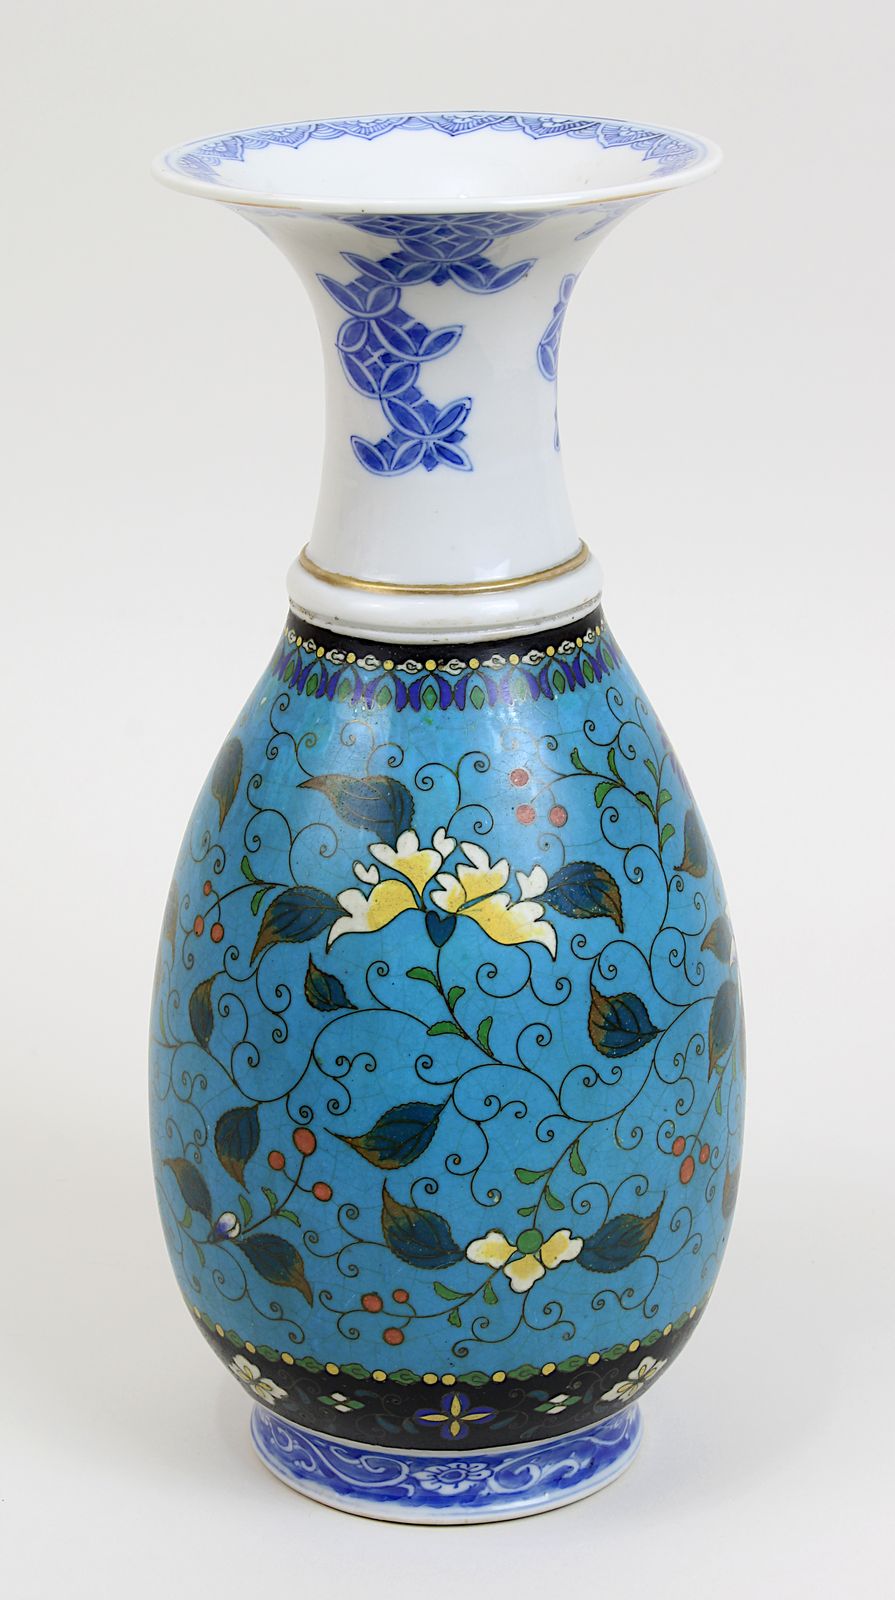 Chinesische Porzellanvase mit Cloisonnéwandung, China 19. Jh., Porzellan weißer Scherben, glasiert - Image 2 of 3